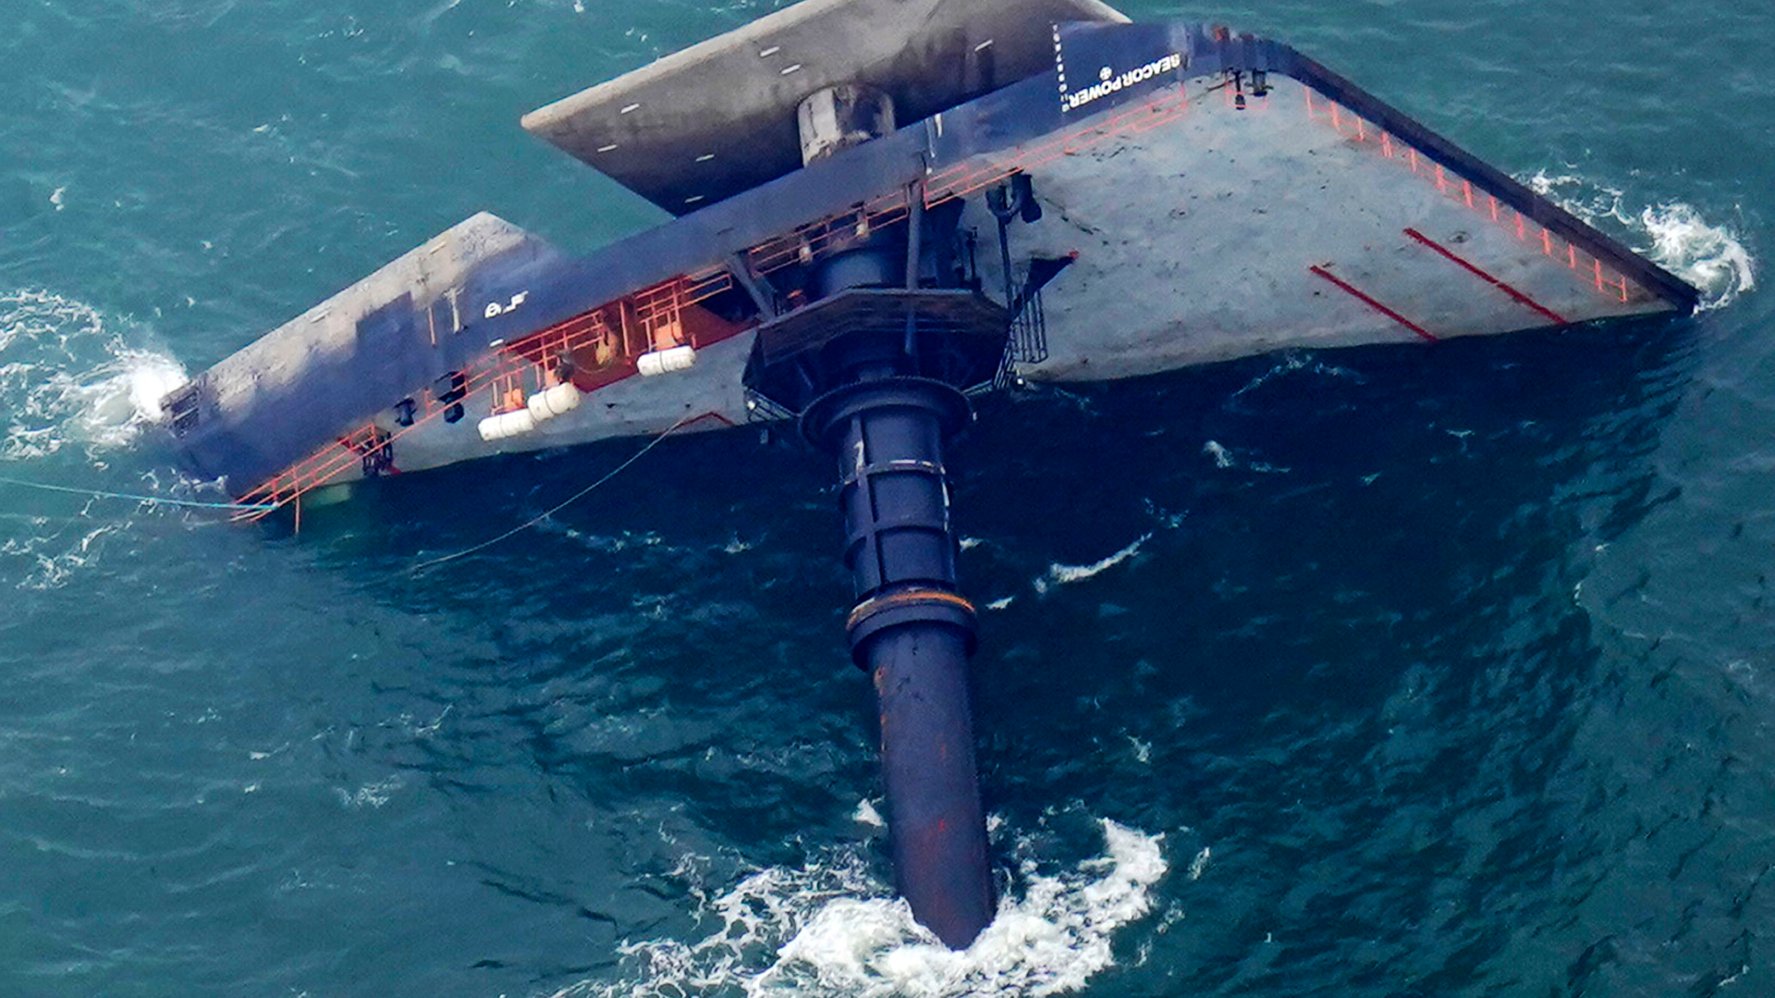 yacht capsized shark attack